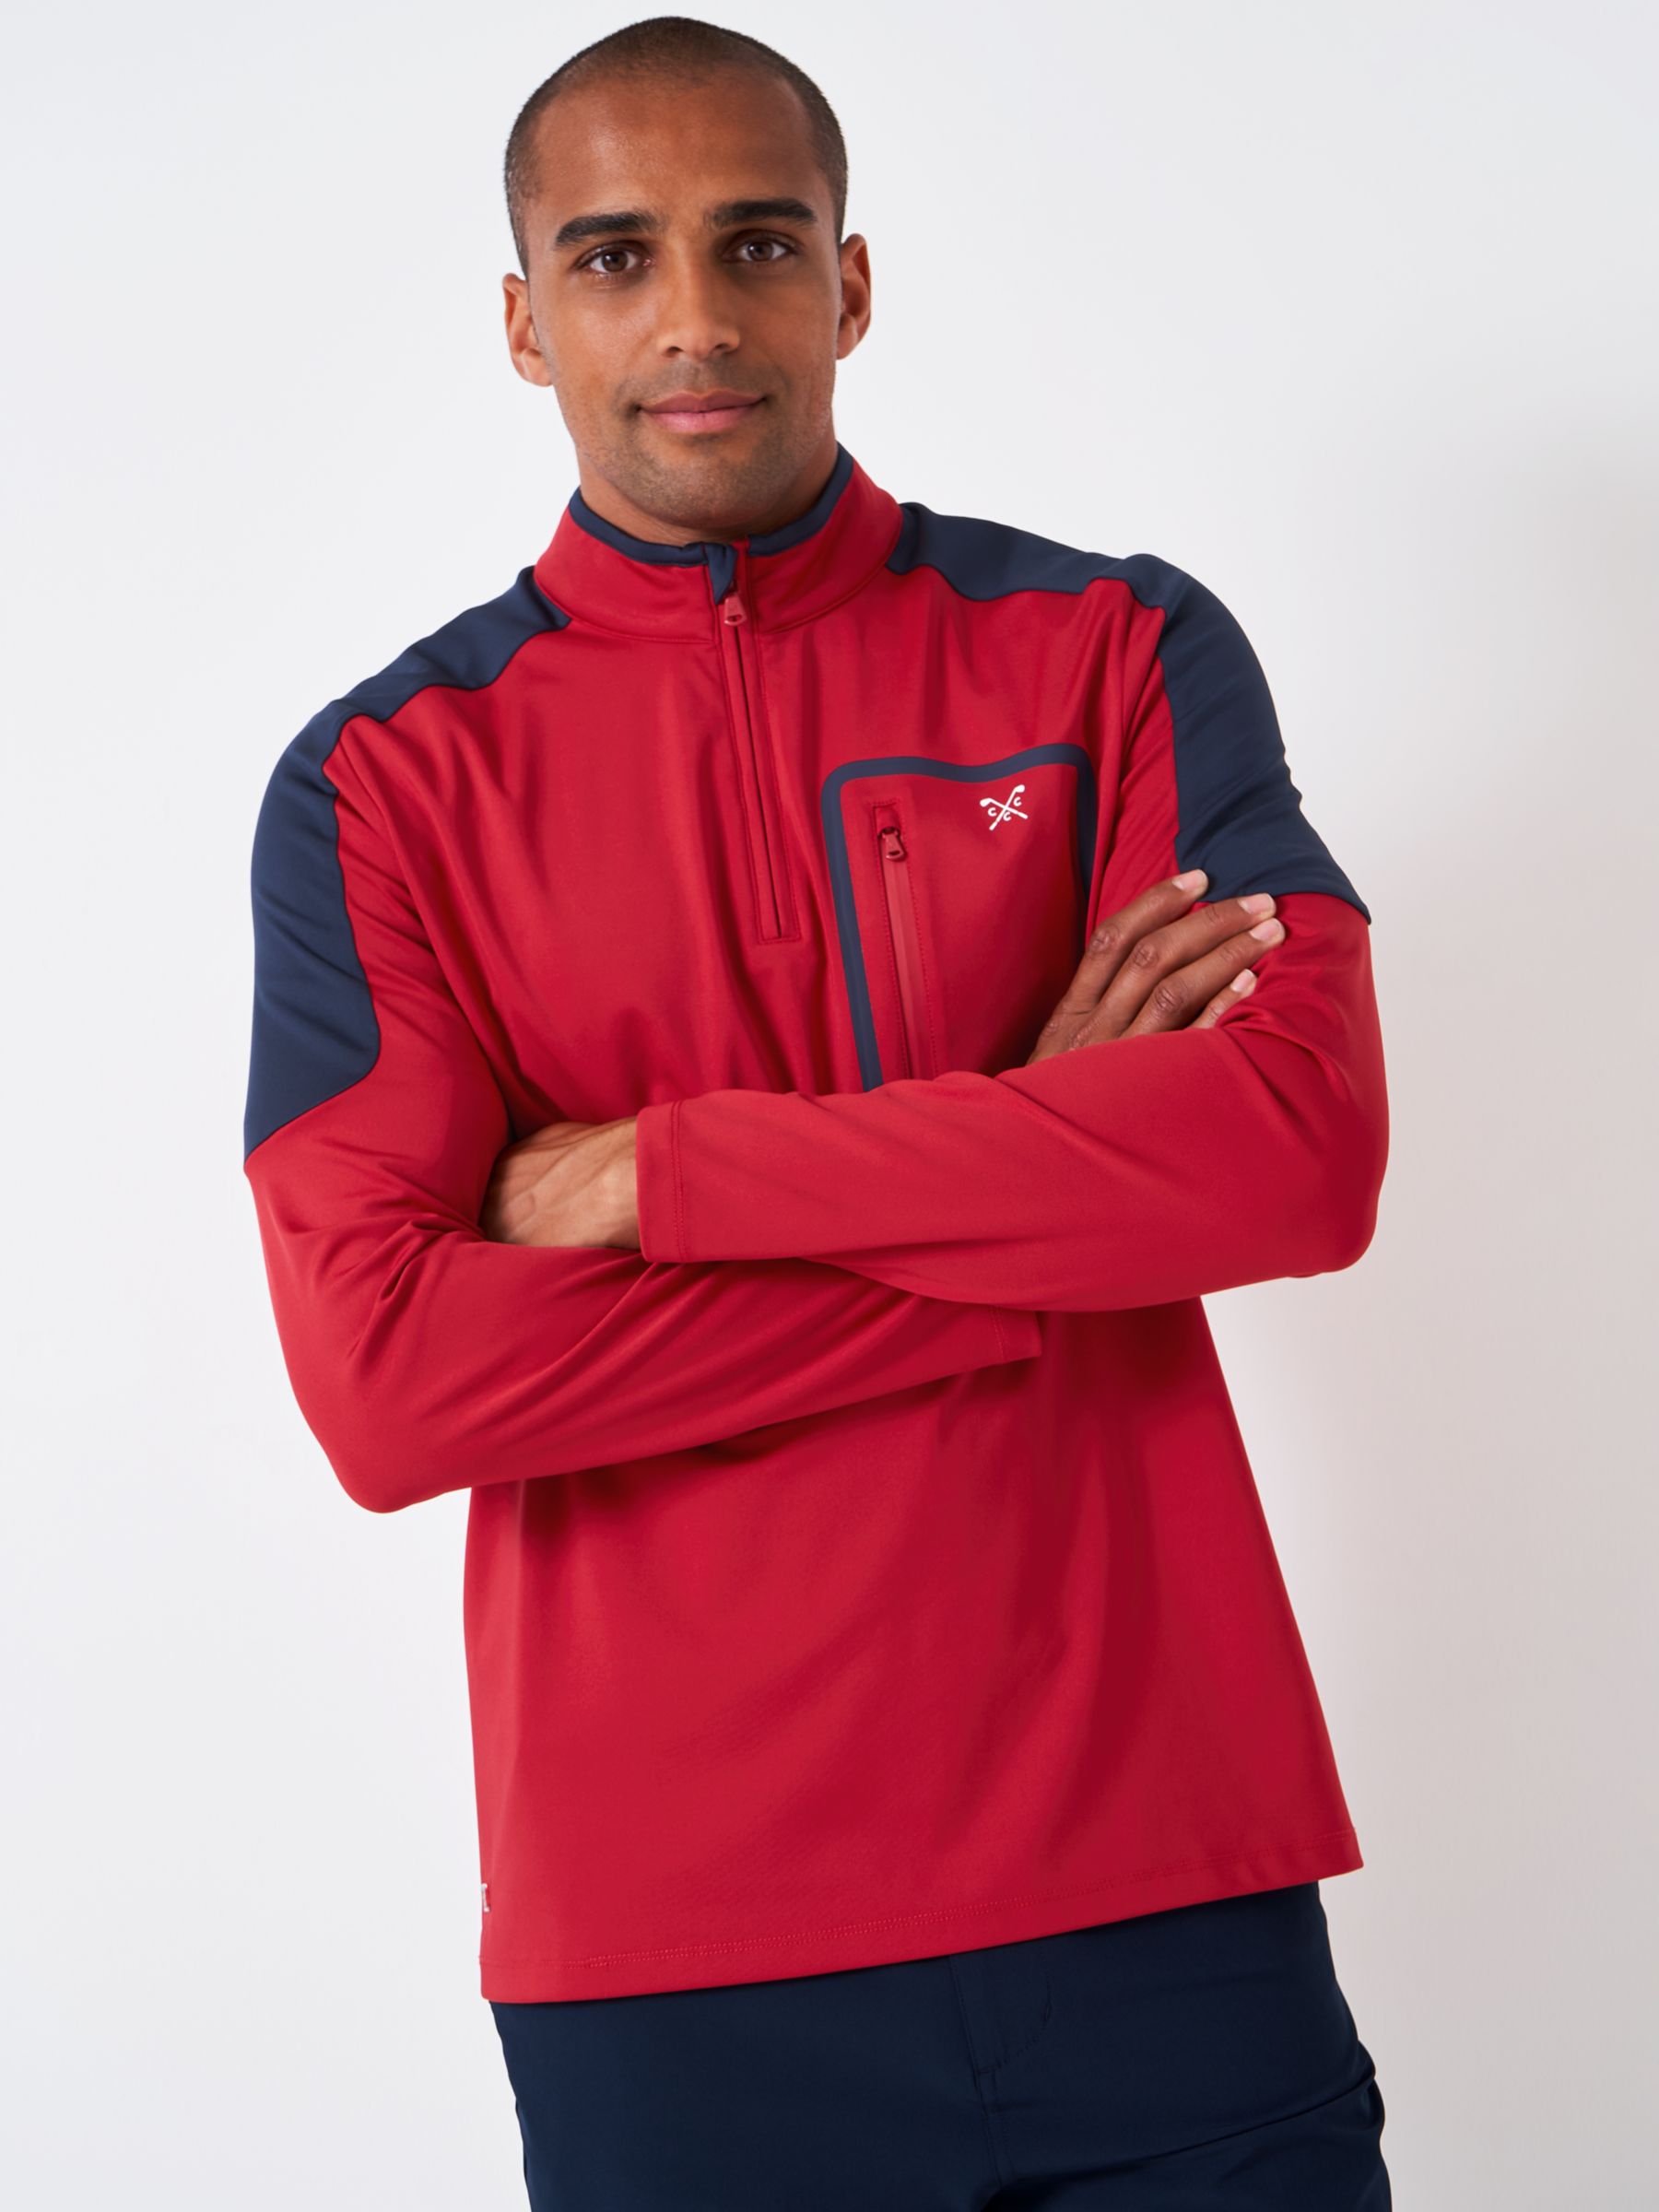 Crew Clothing Fairway Half Zip Golf Sweatshirt, Mid Red, L